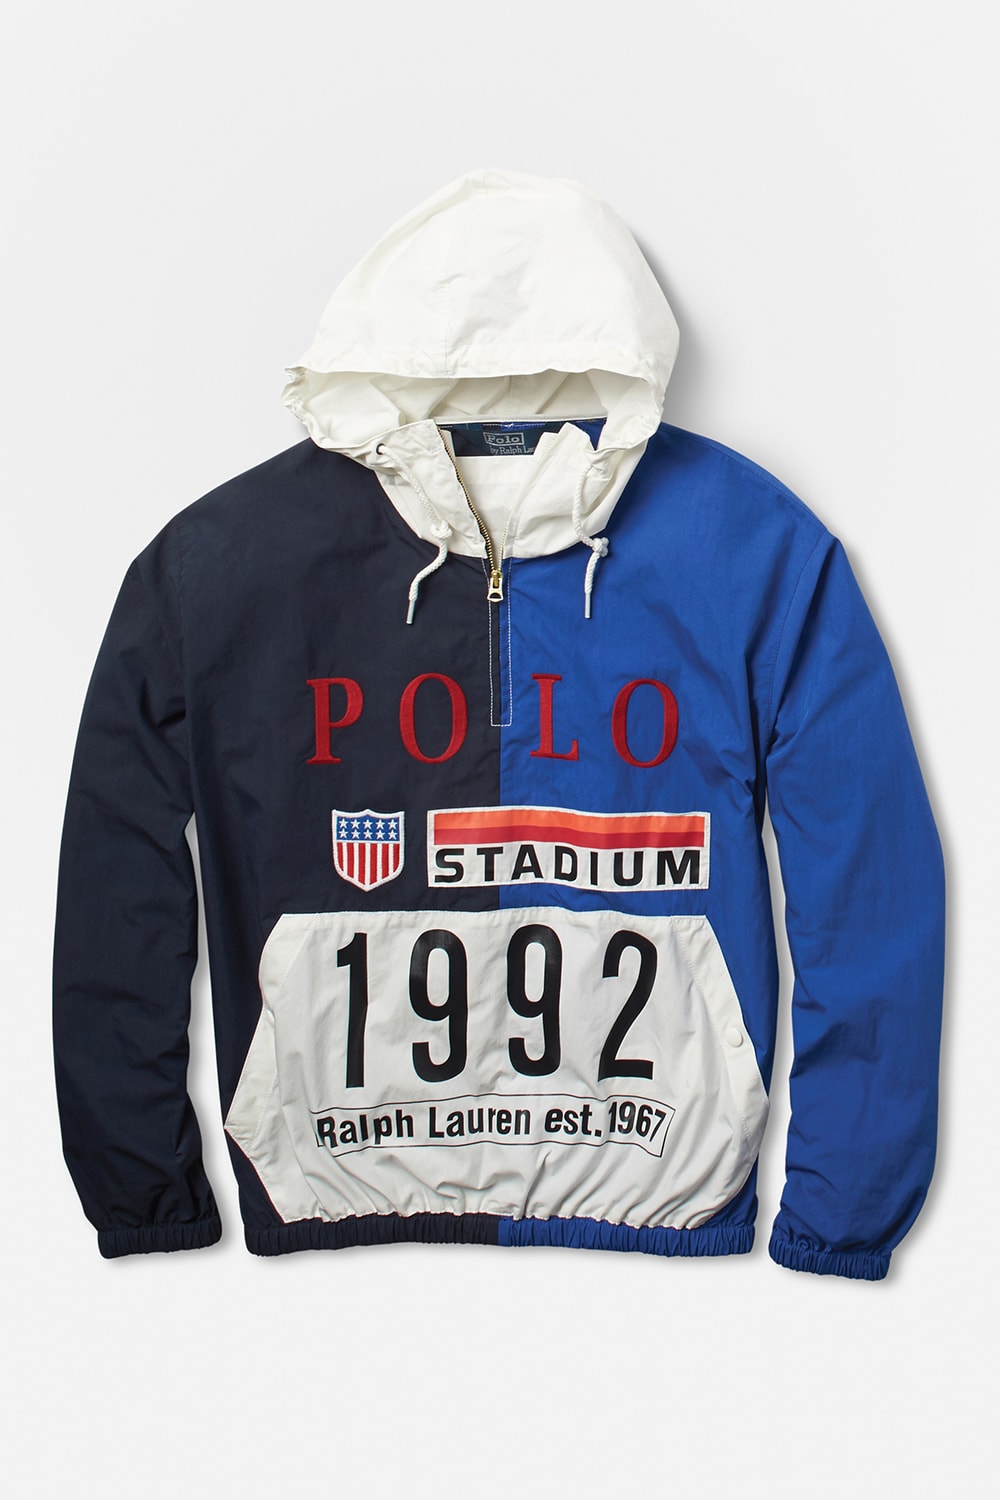 랄프 로렌 폴로 스타디움 컬렉션 한정판 2017 ralph lauren polo stadium collection limited edition